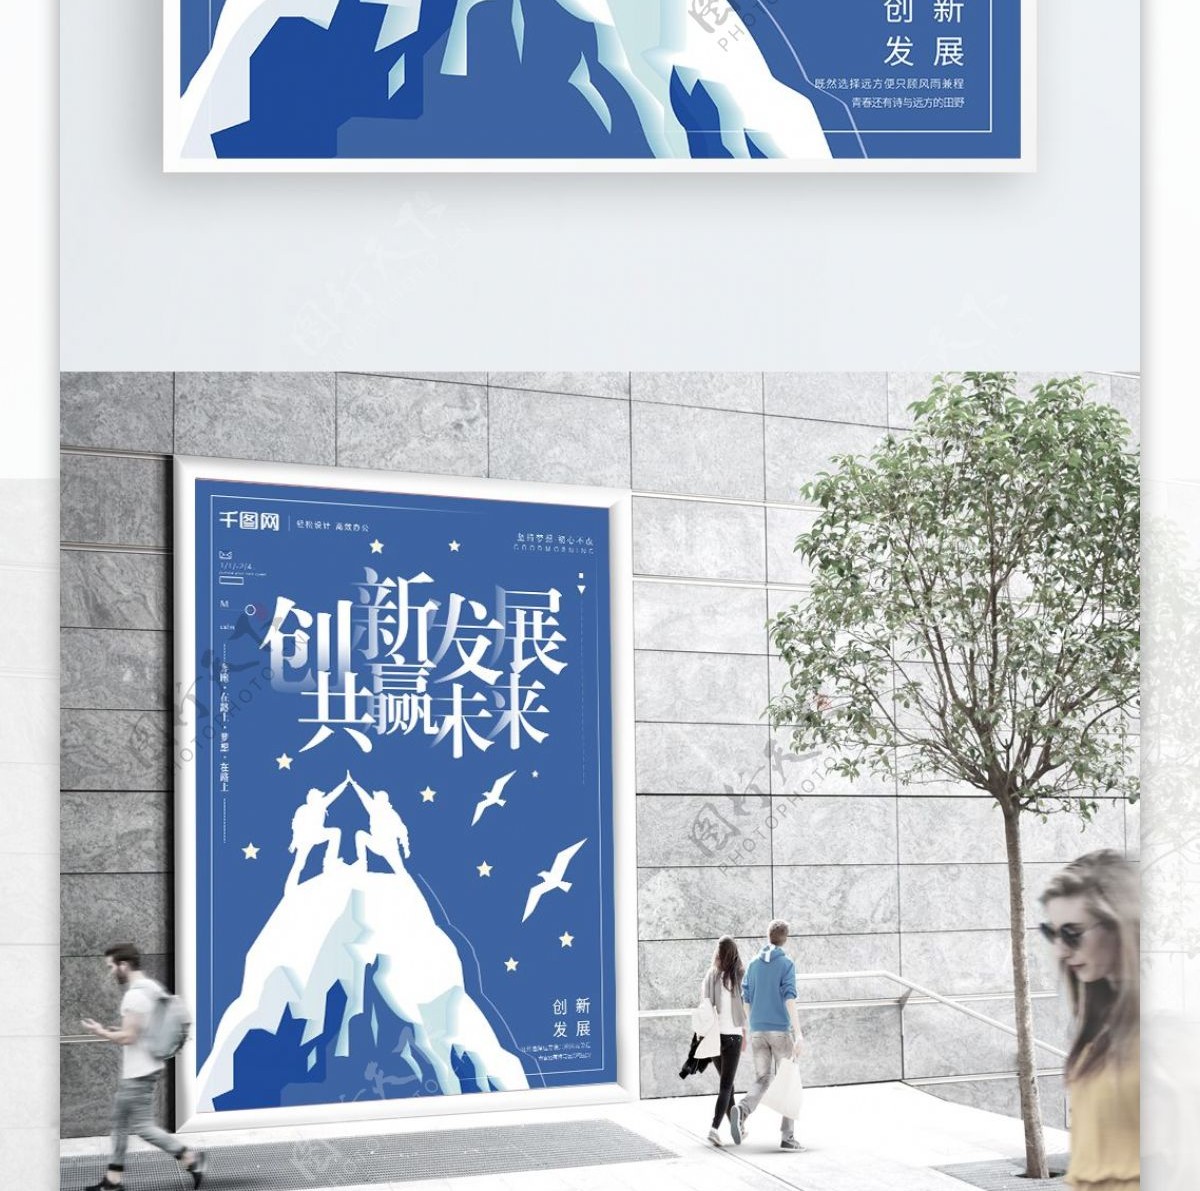 蓝色剪纸风创新发展共赢未来企业文化海报